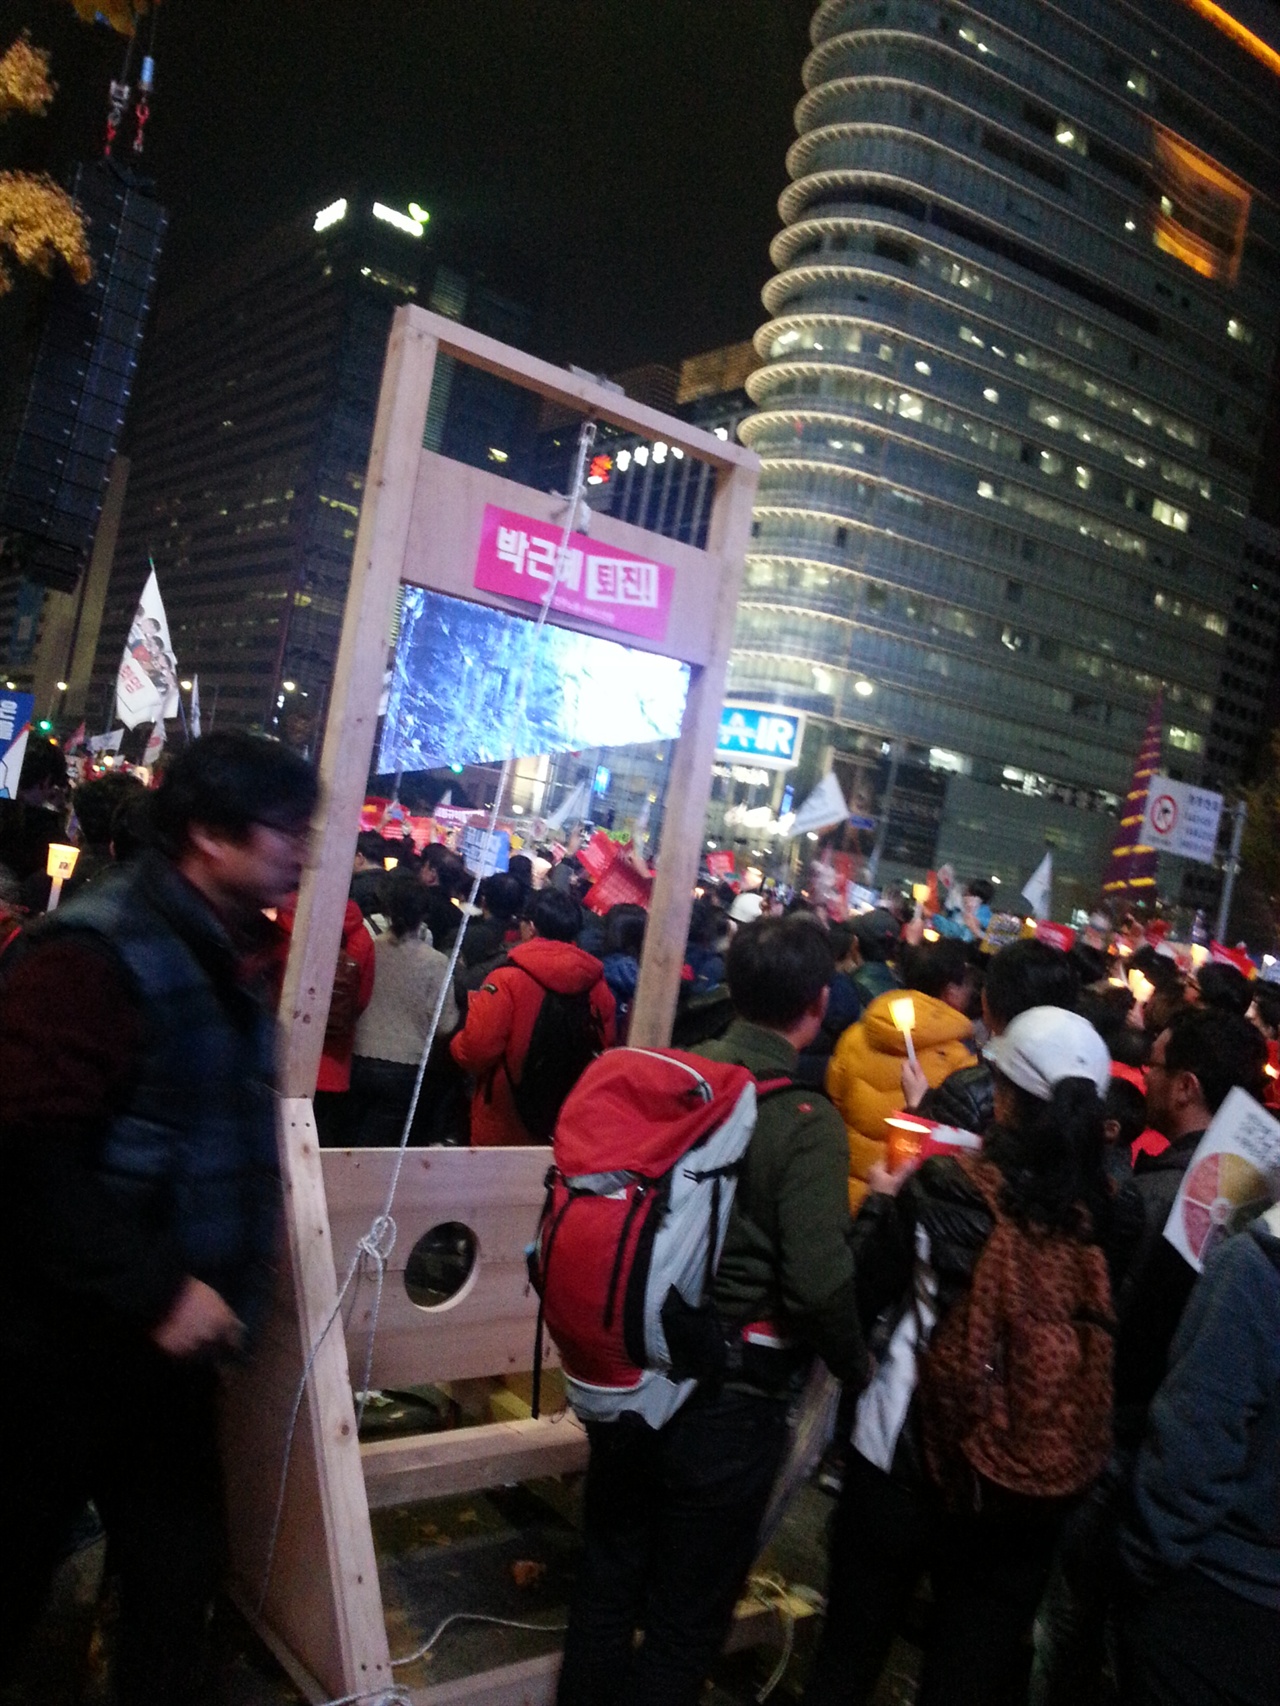 11월 12일 민중총궐기대회 현장의 ‘단두대’ 설치미술
